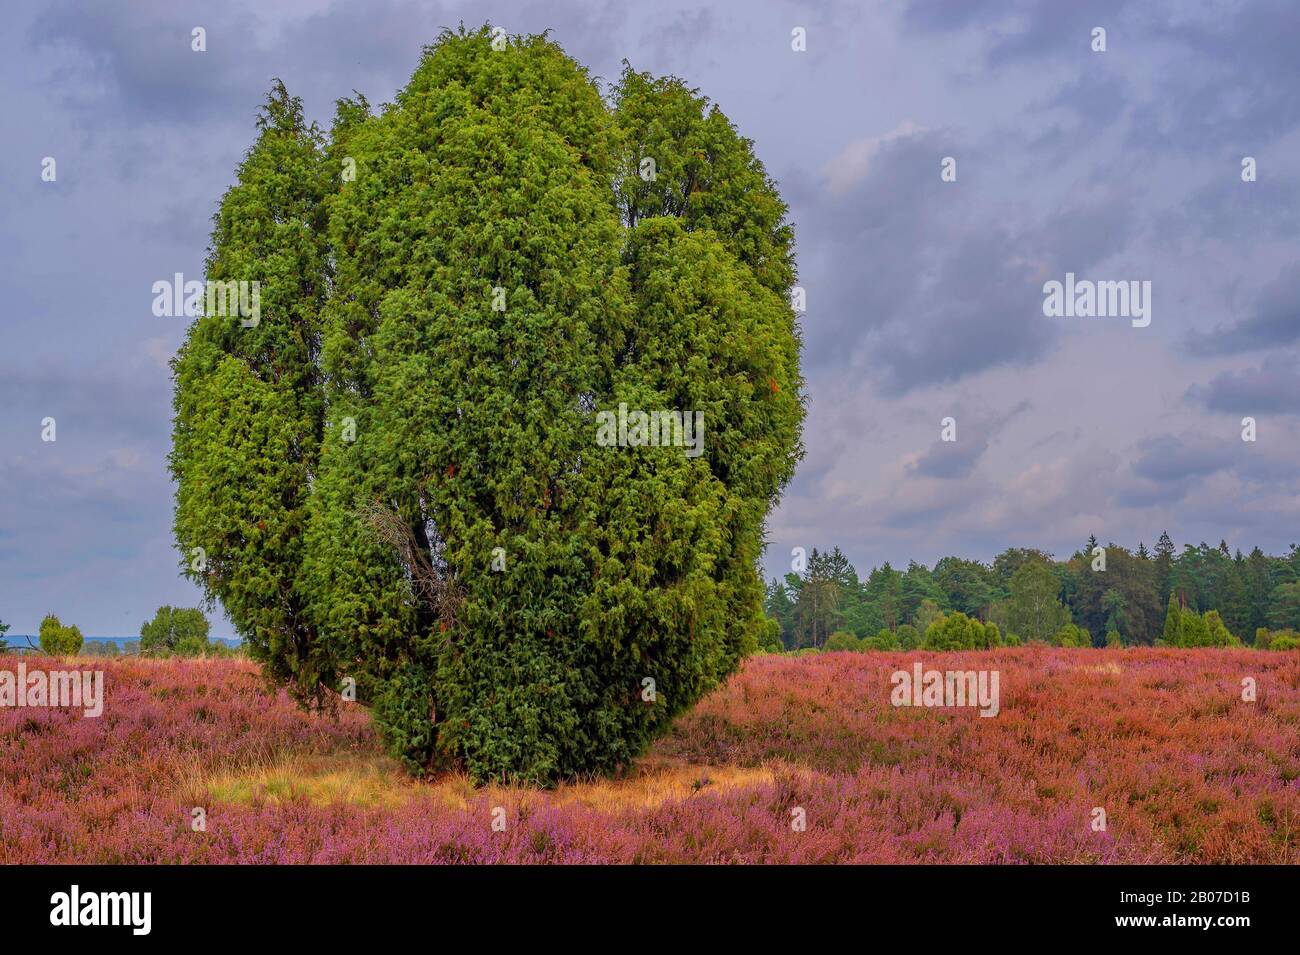 Genévrier commun, genévrier (Juniperus communis), heath à Lueneburger Heide, Lueneburg Heath, Allemagne, Basse-Saxe, Wilsede Banque D'Images